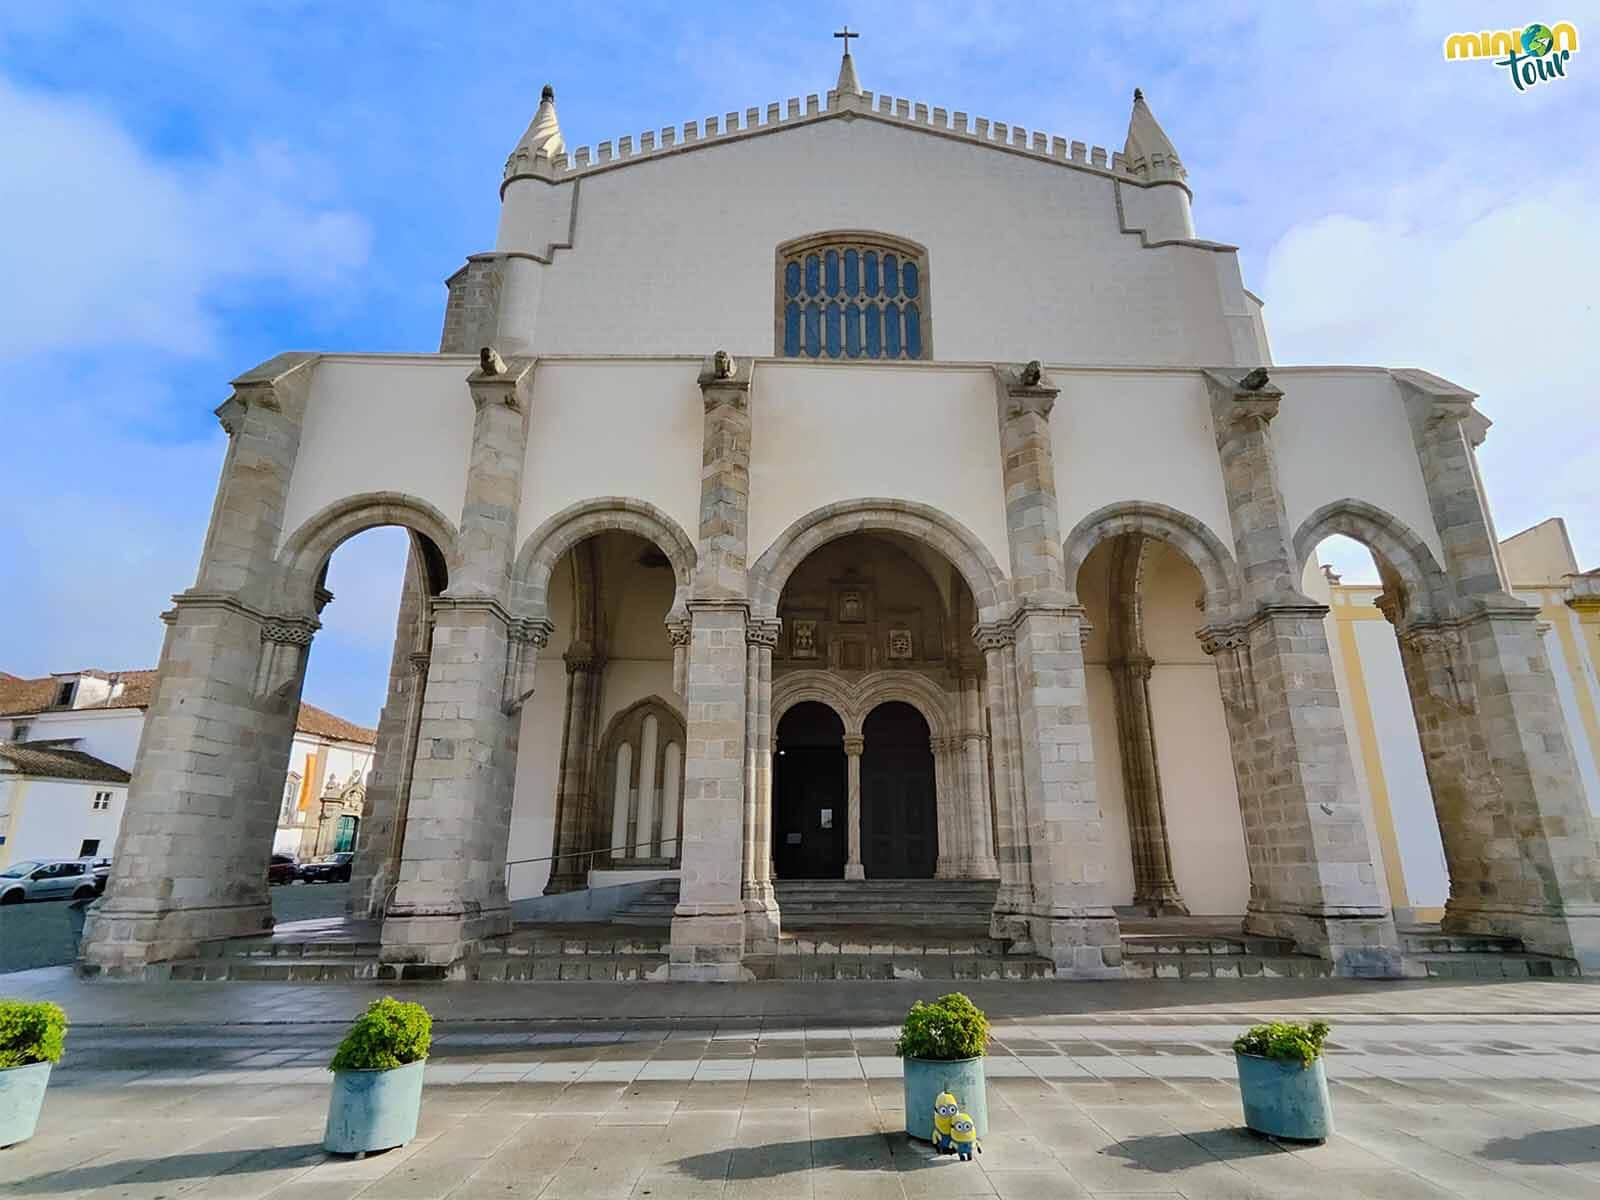 La Iglesia de San Francisco es otro de los sitios que no te puedes perder en Évora